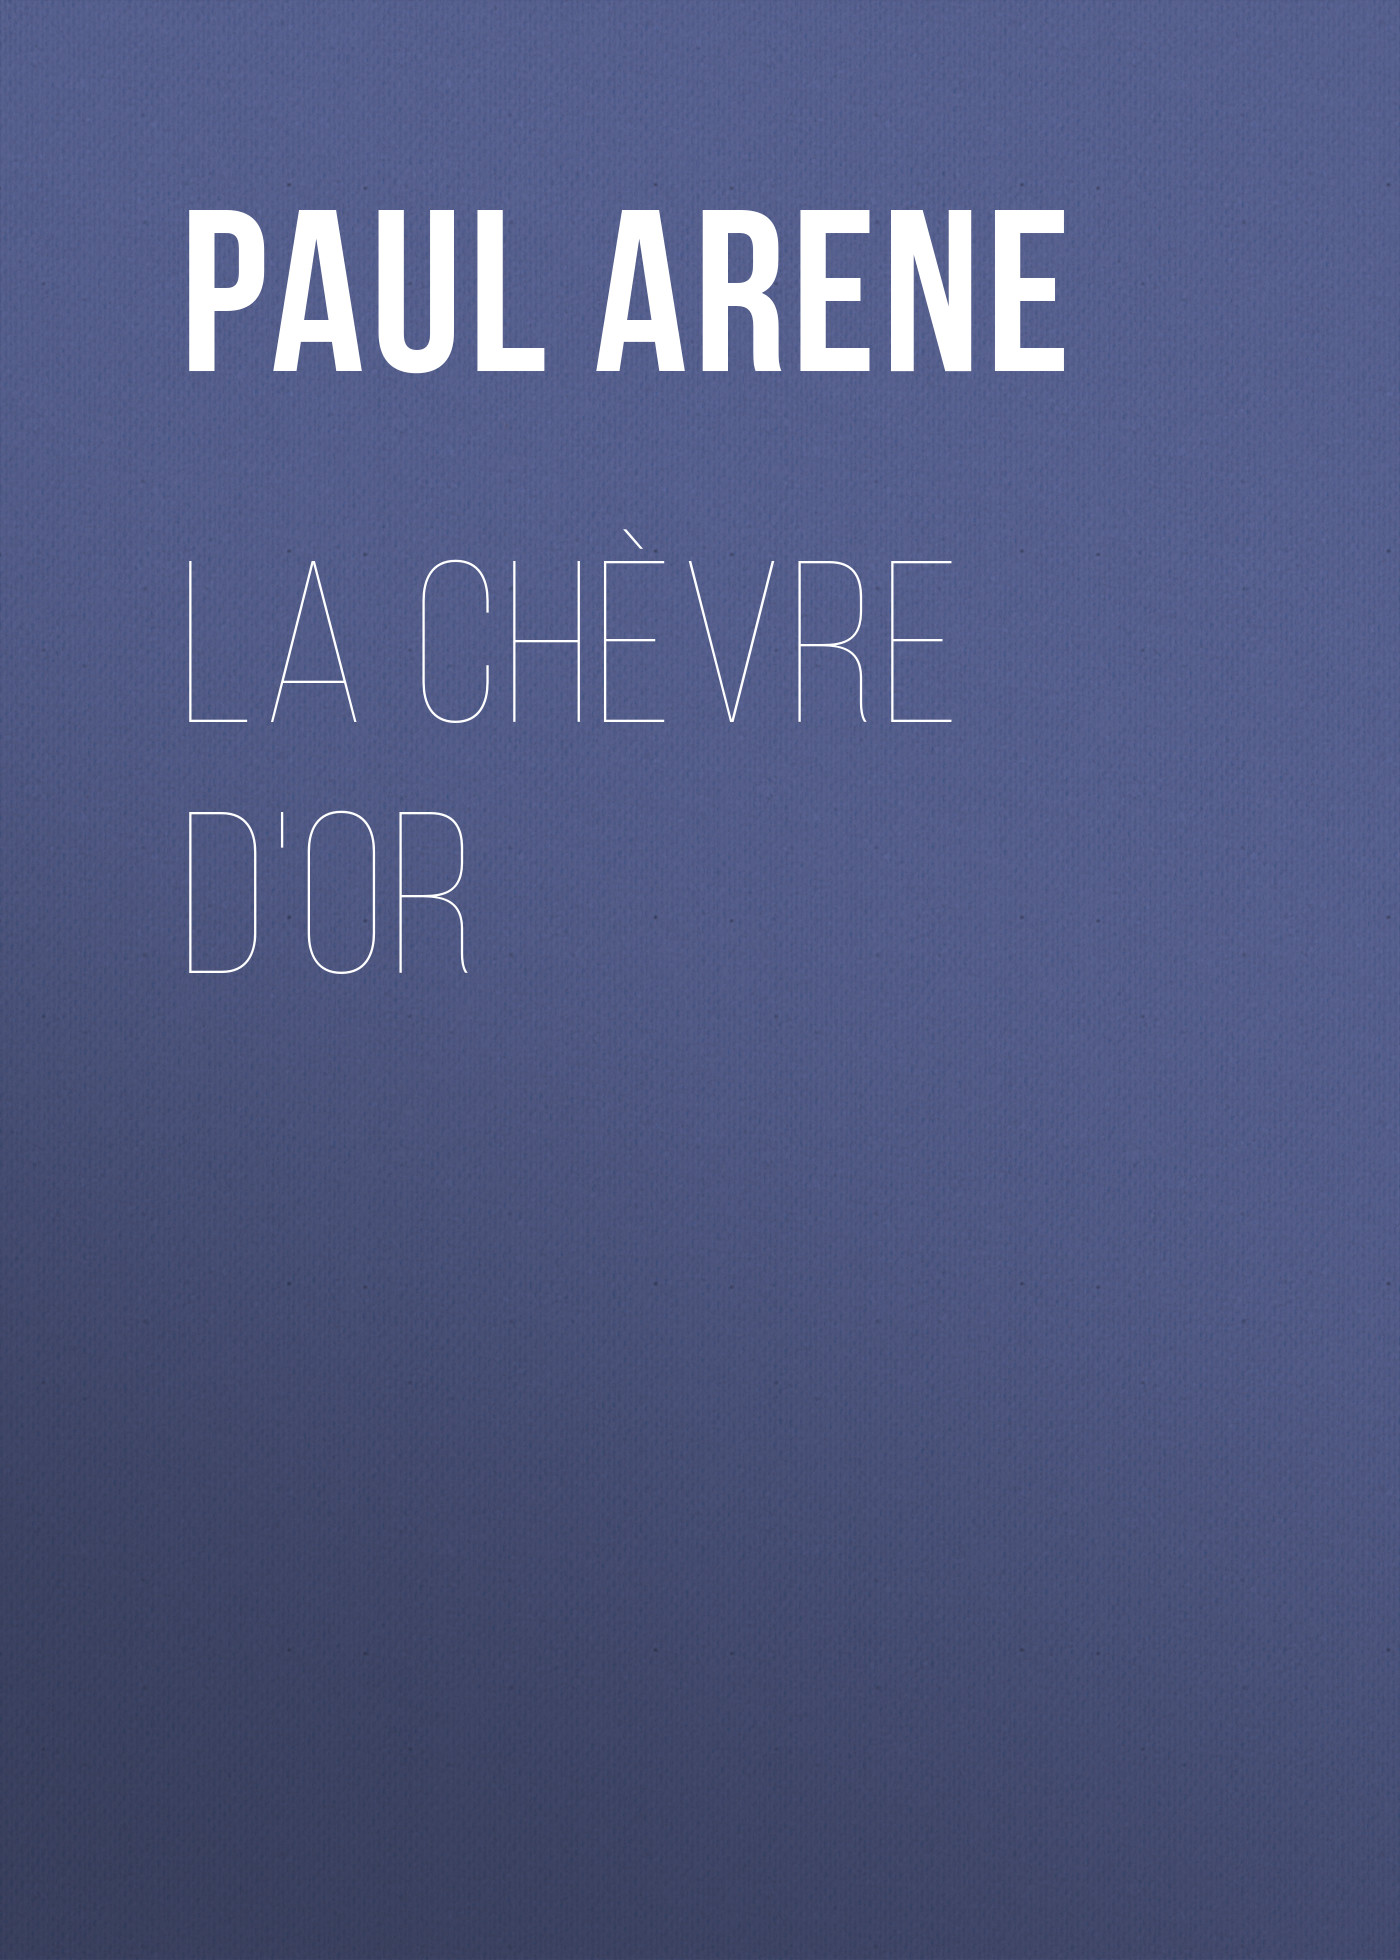 Книга La Chèvre d'Or из серии , созданная Paul Arene, может относится к жанру Зарубежная старинная литература, Зарубежная классика, Иностранные языки. Стоимость электронной книги La Chèvre d'Or с идентификатором 24176188 составляет 0 руб.